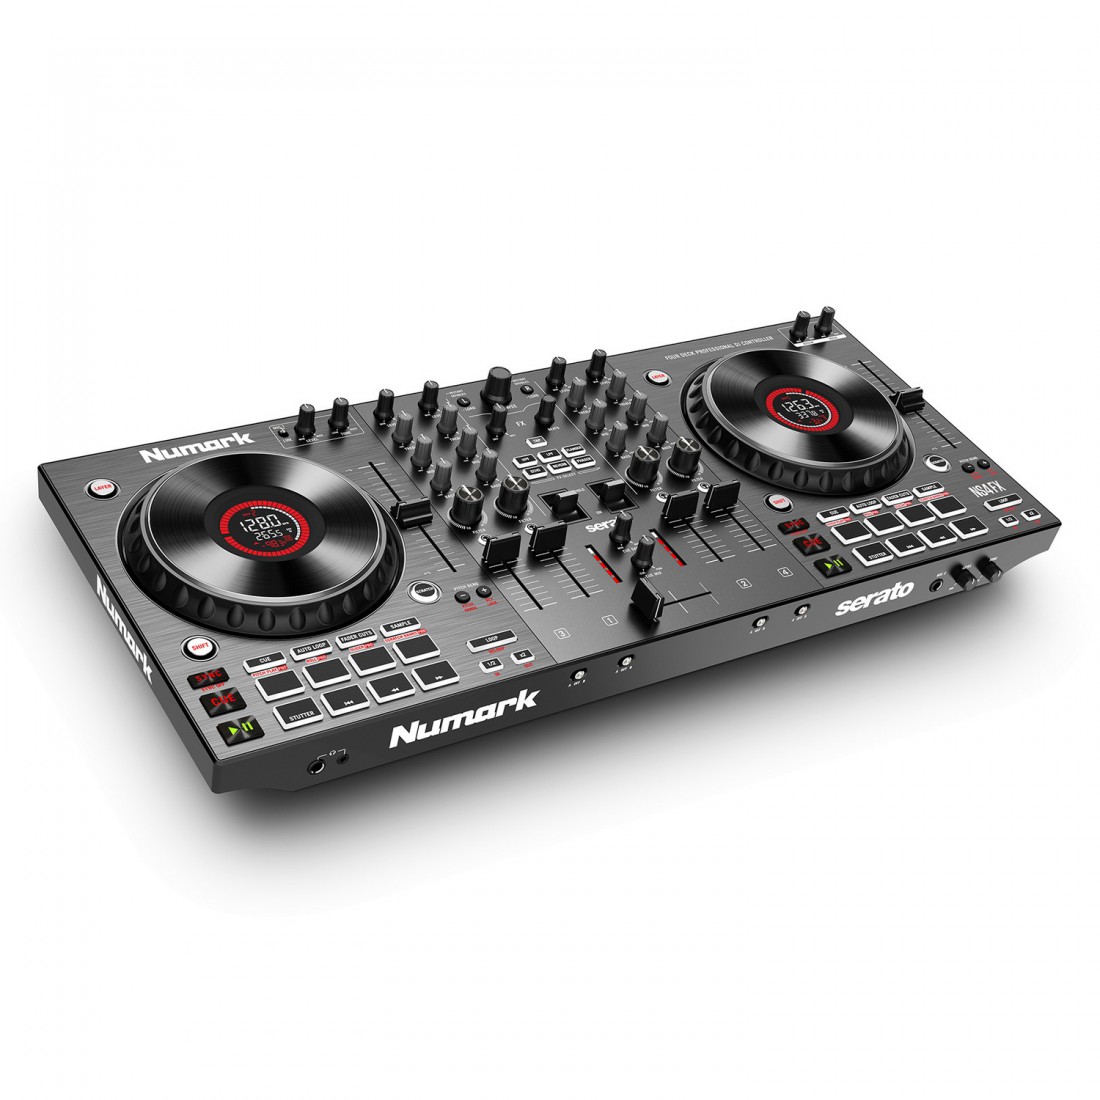 Los nuevos controladores DJ Mixtrack FX de Numark ofrecen un fácil